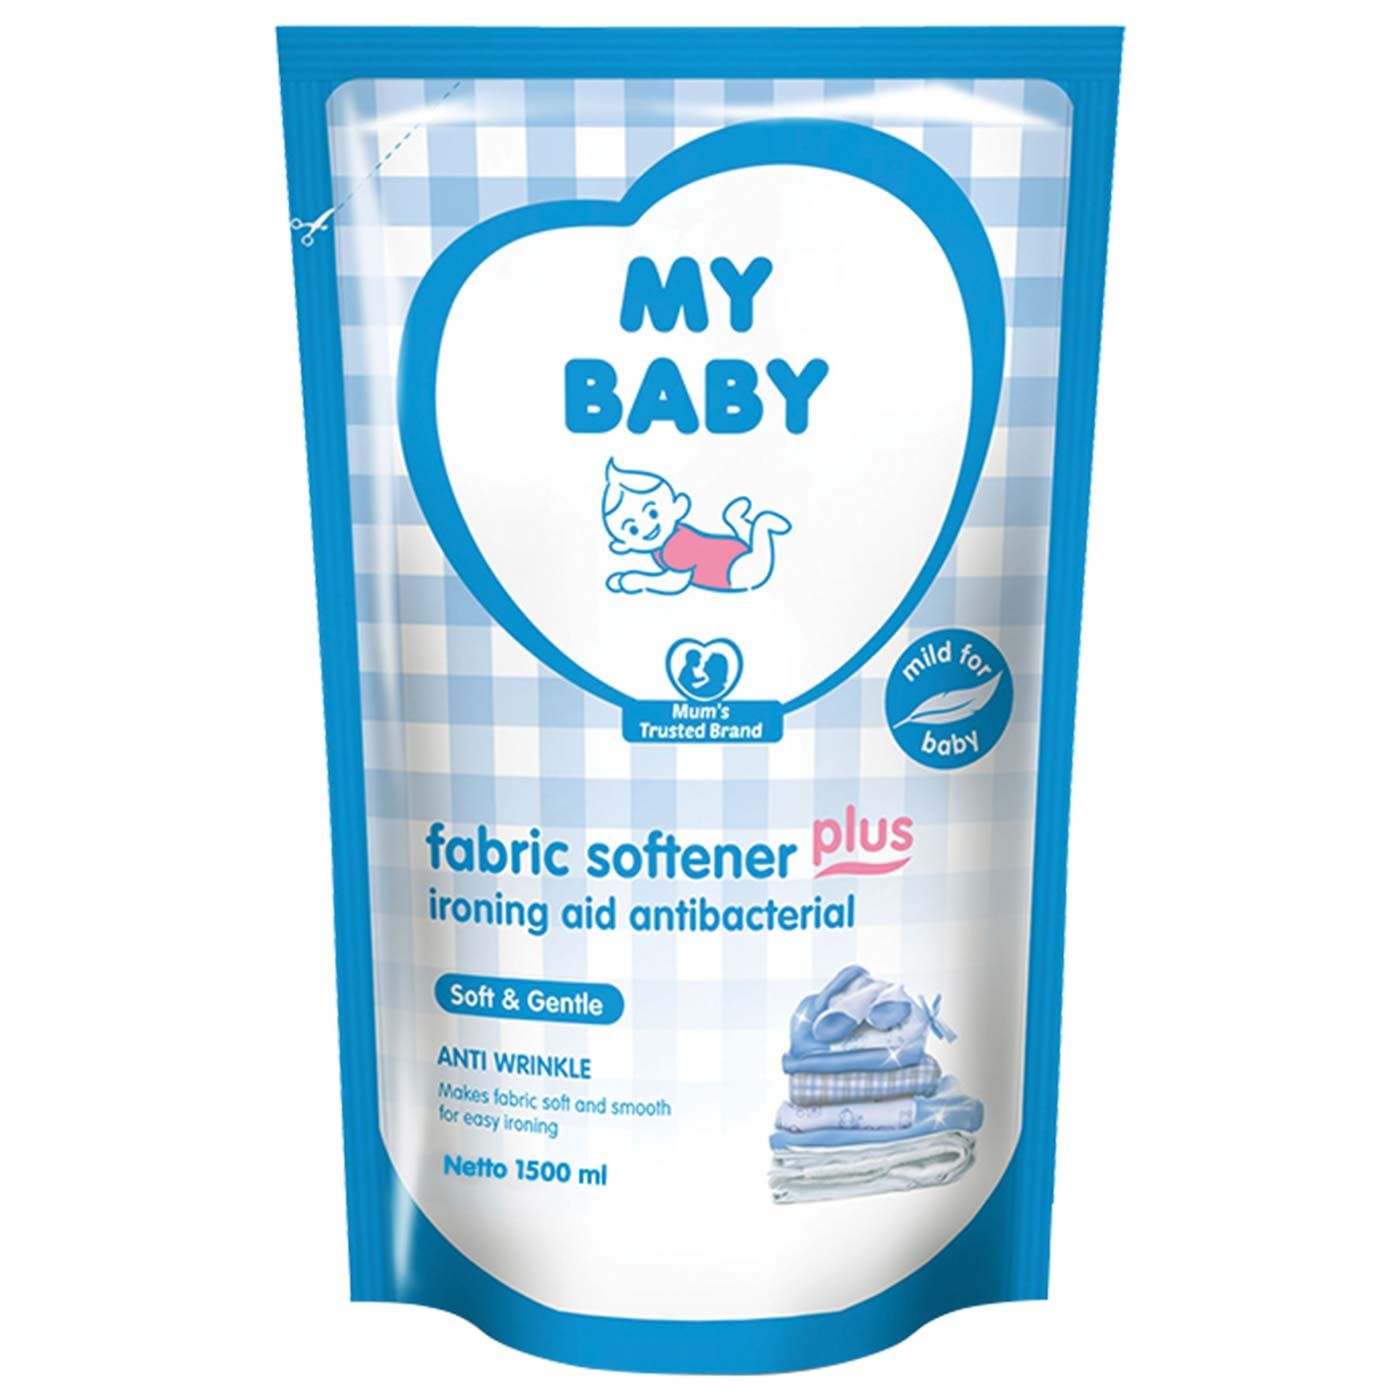 My Baby fabric Softener Plus Ironing Aid 1500ml